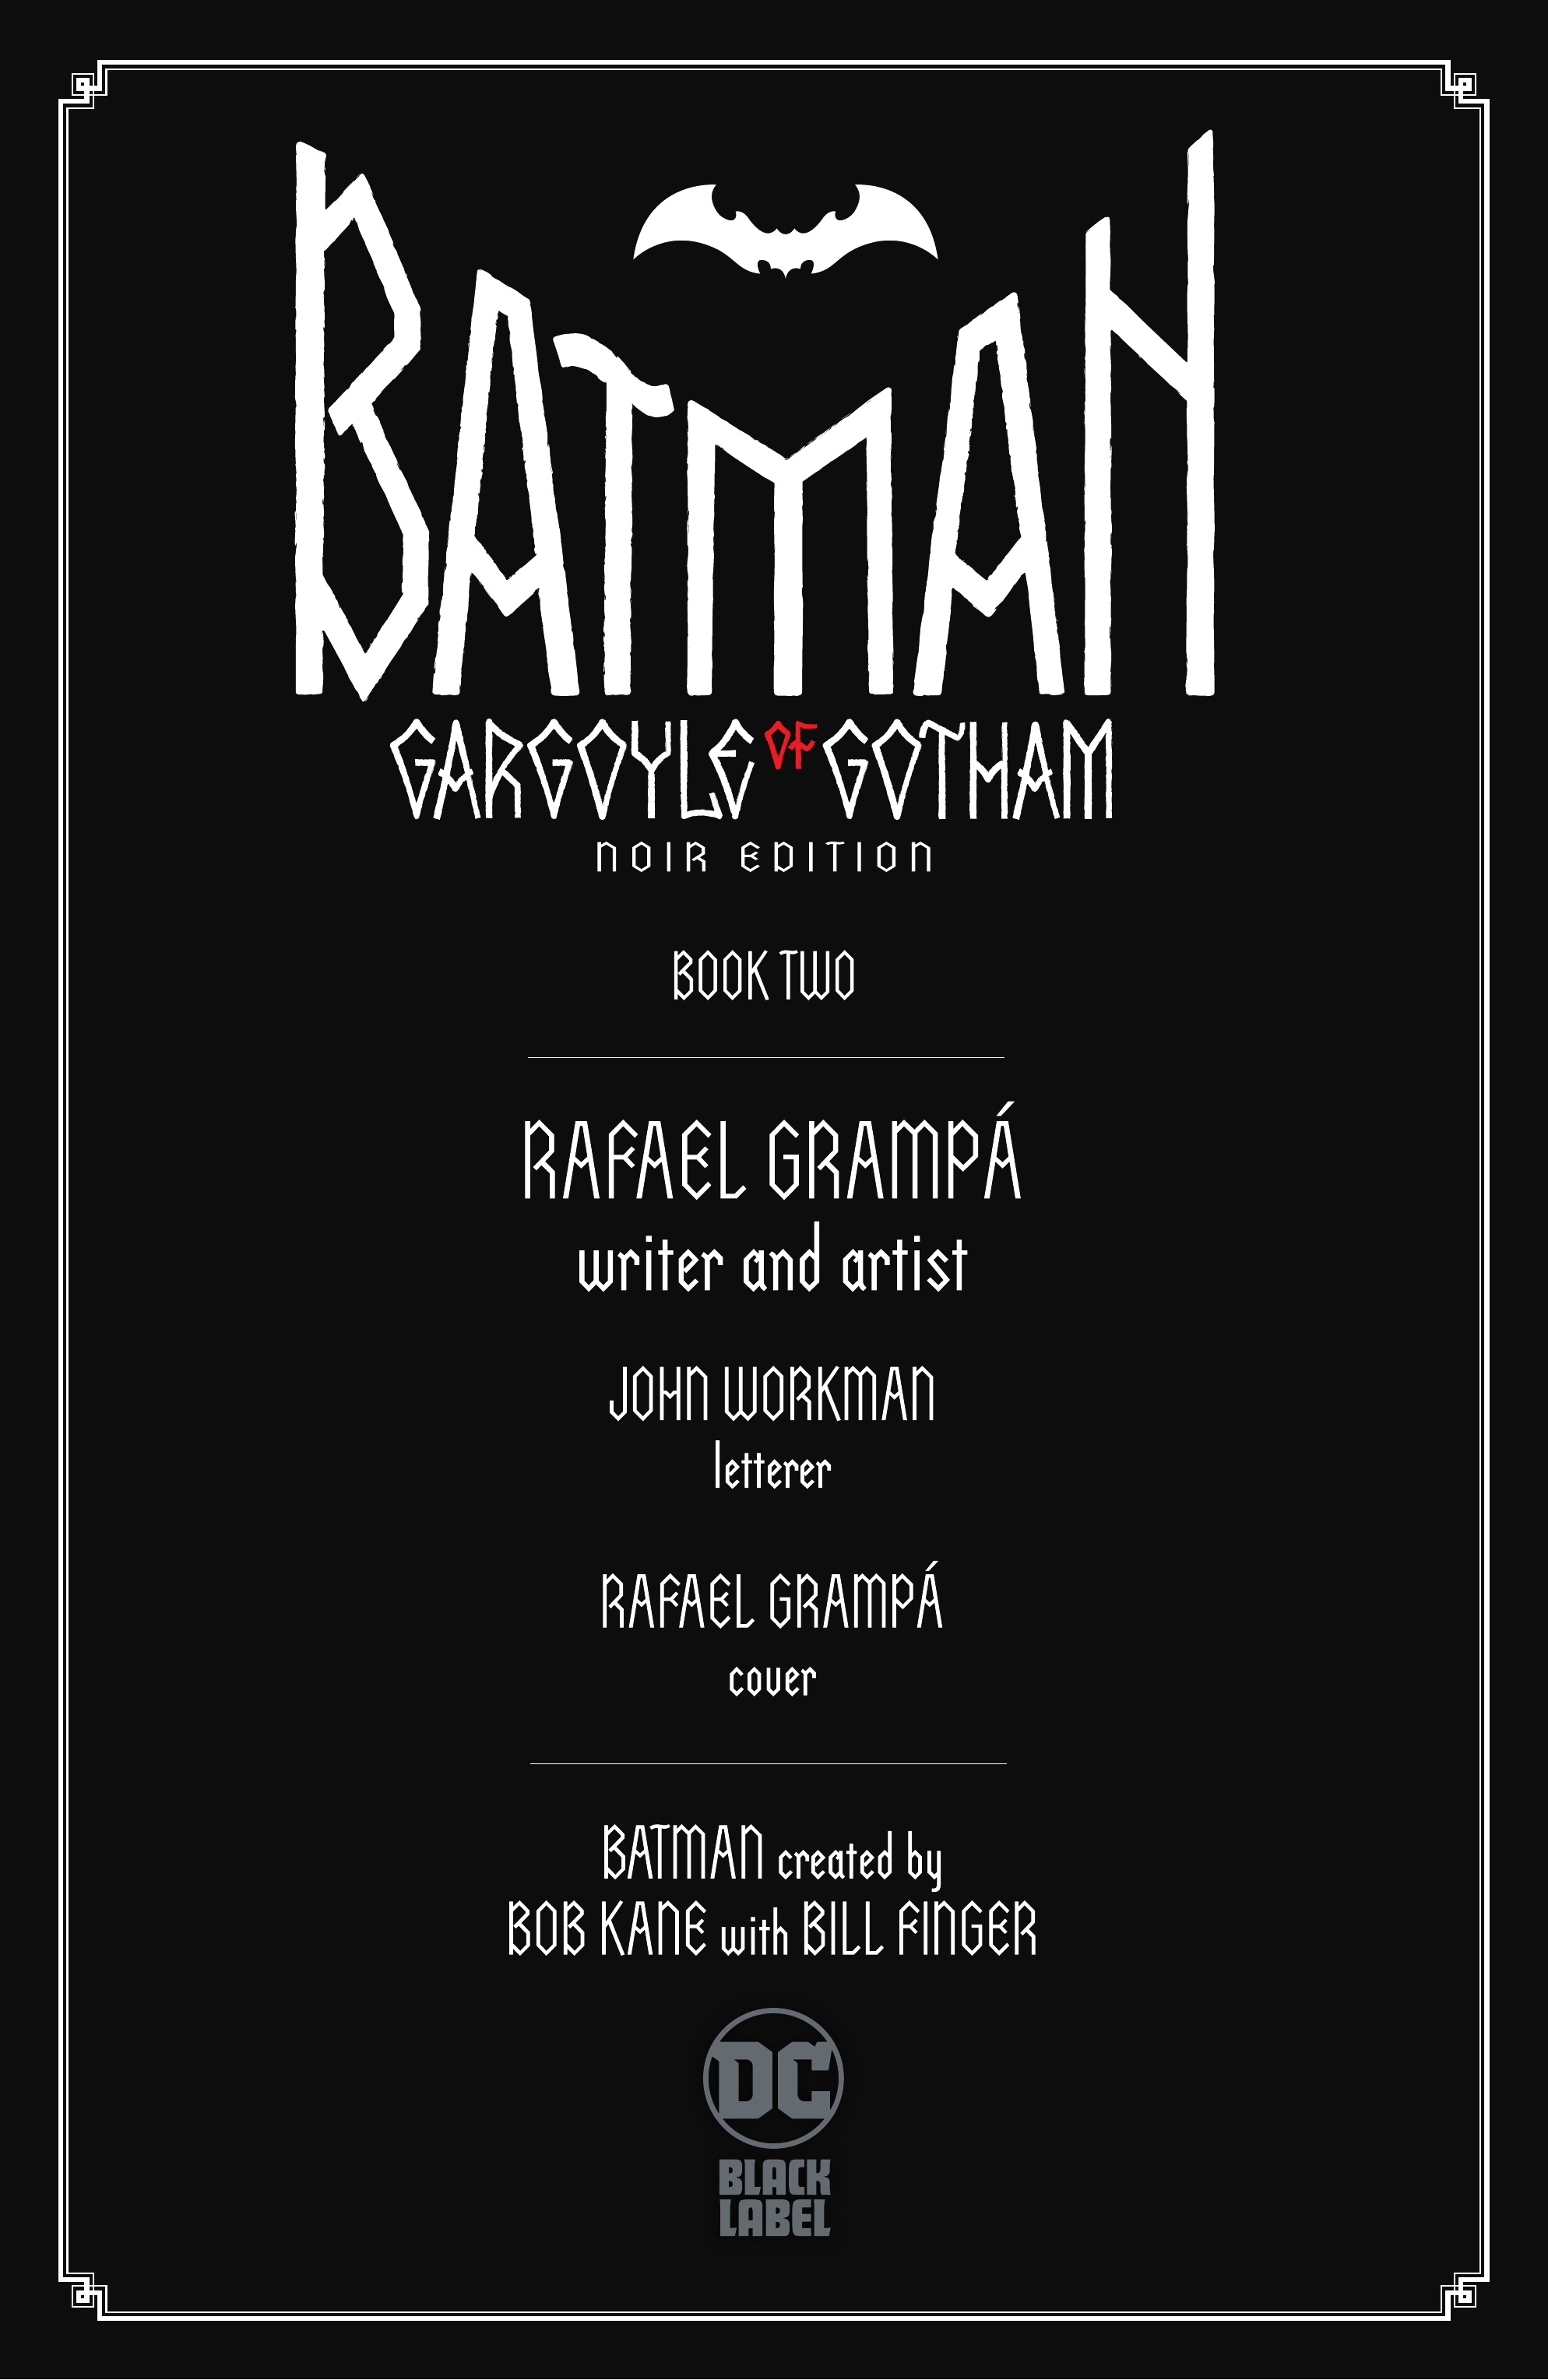 Read online Batman: Gargoyle of Gotham Noir Edition comic -  Issue #2 - 3